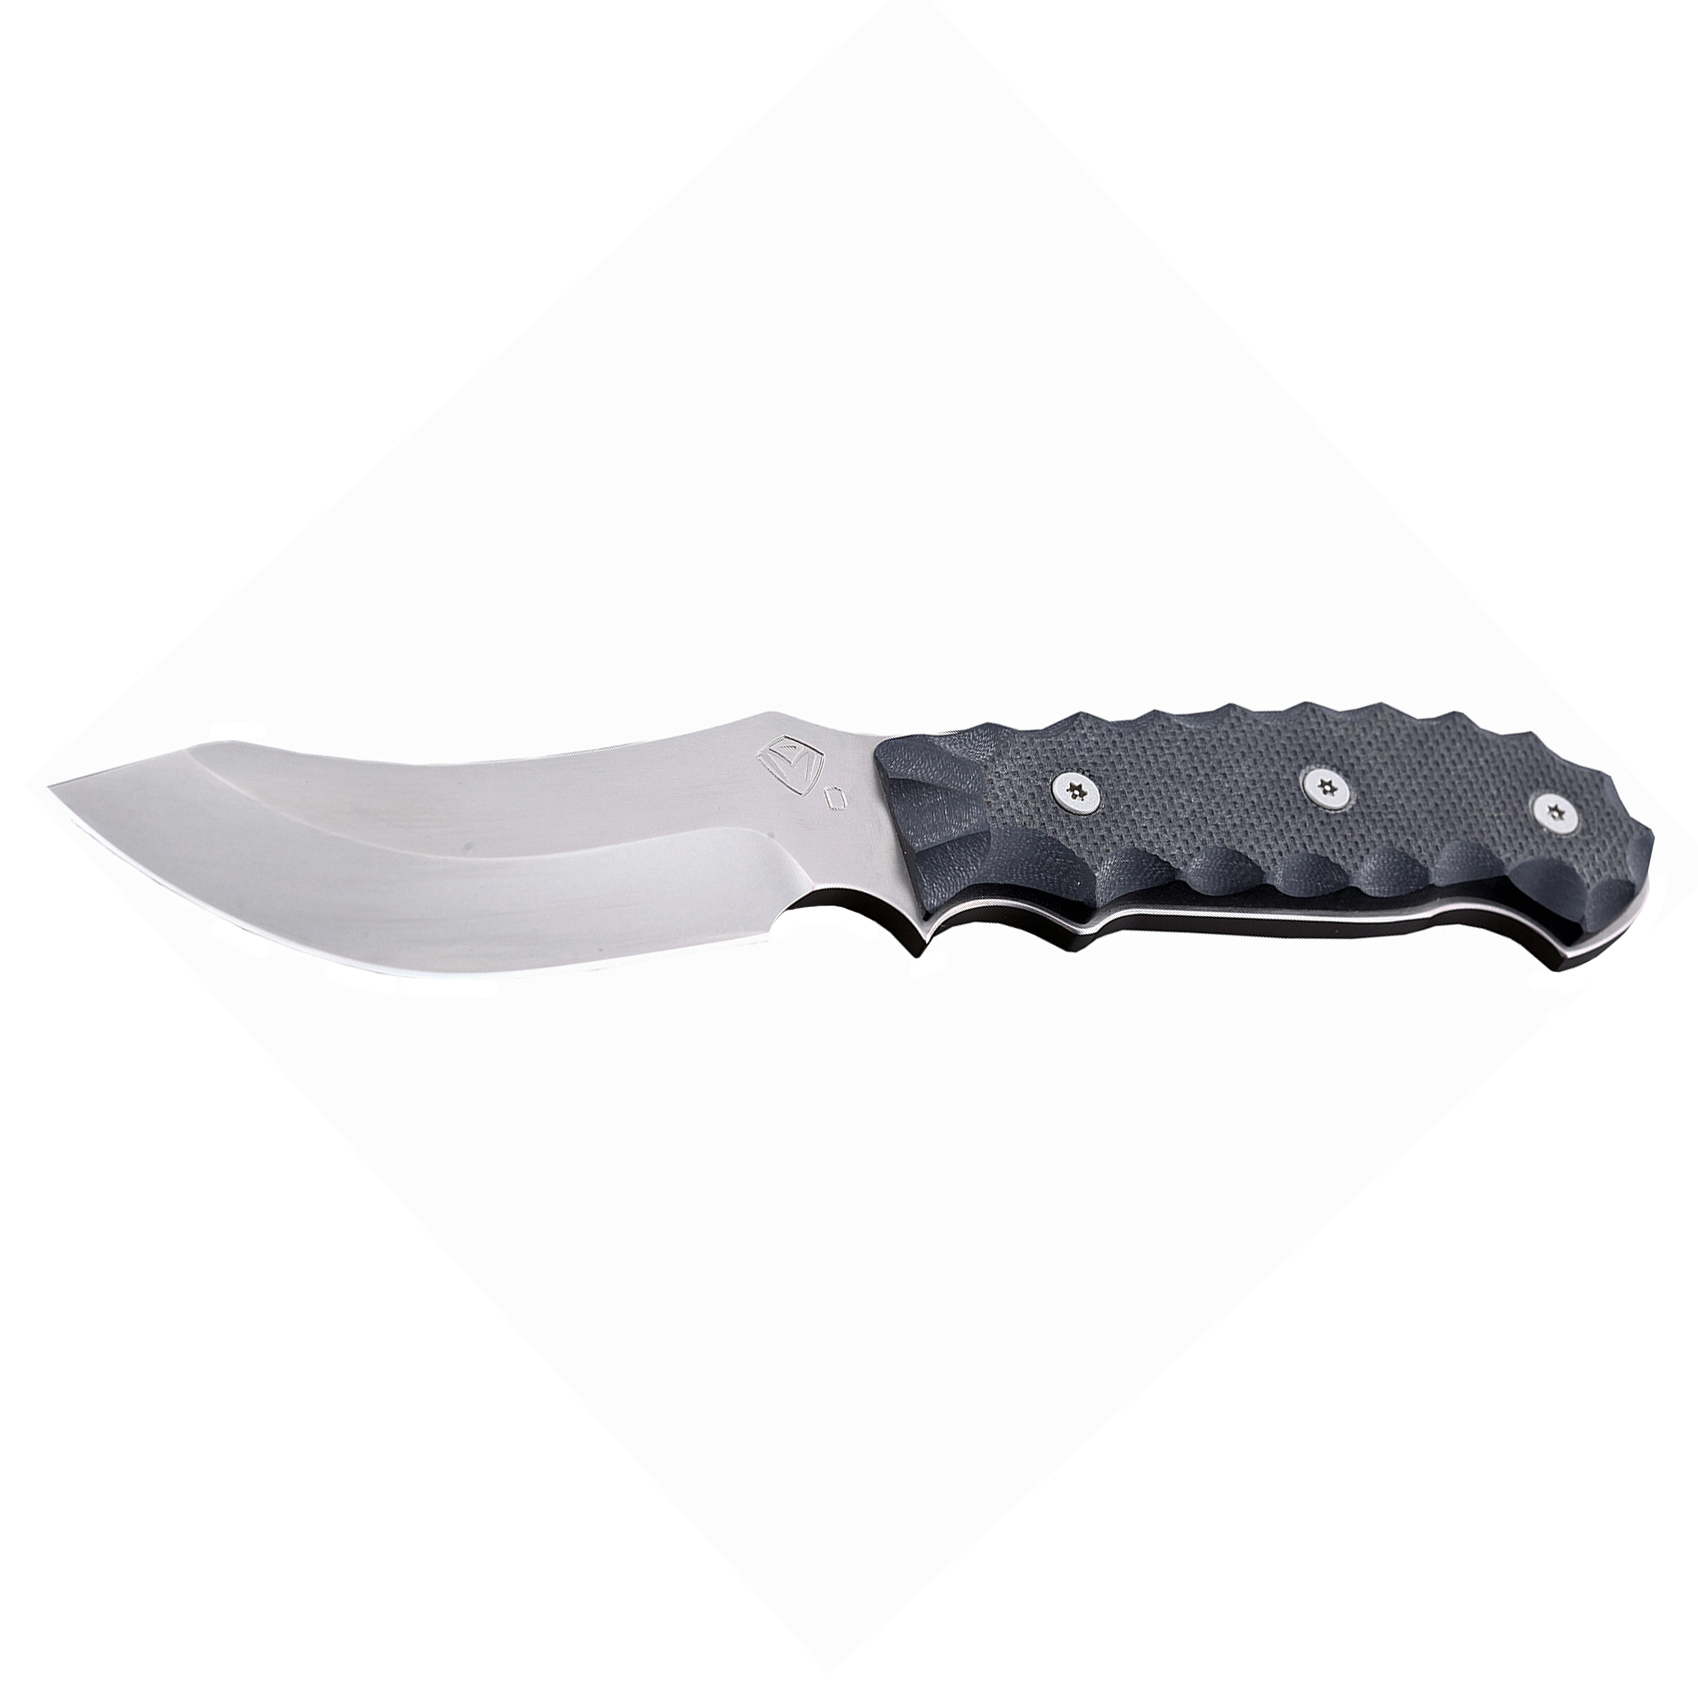 Нож Elk Skinner, NP3 Coated D2 Steel, Black G-10 Handle - фото 2